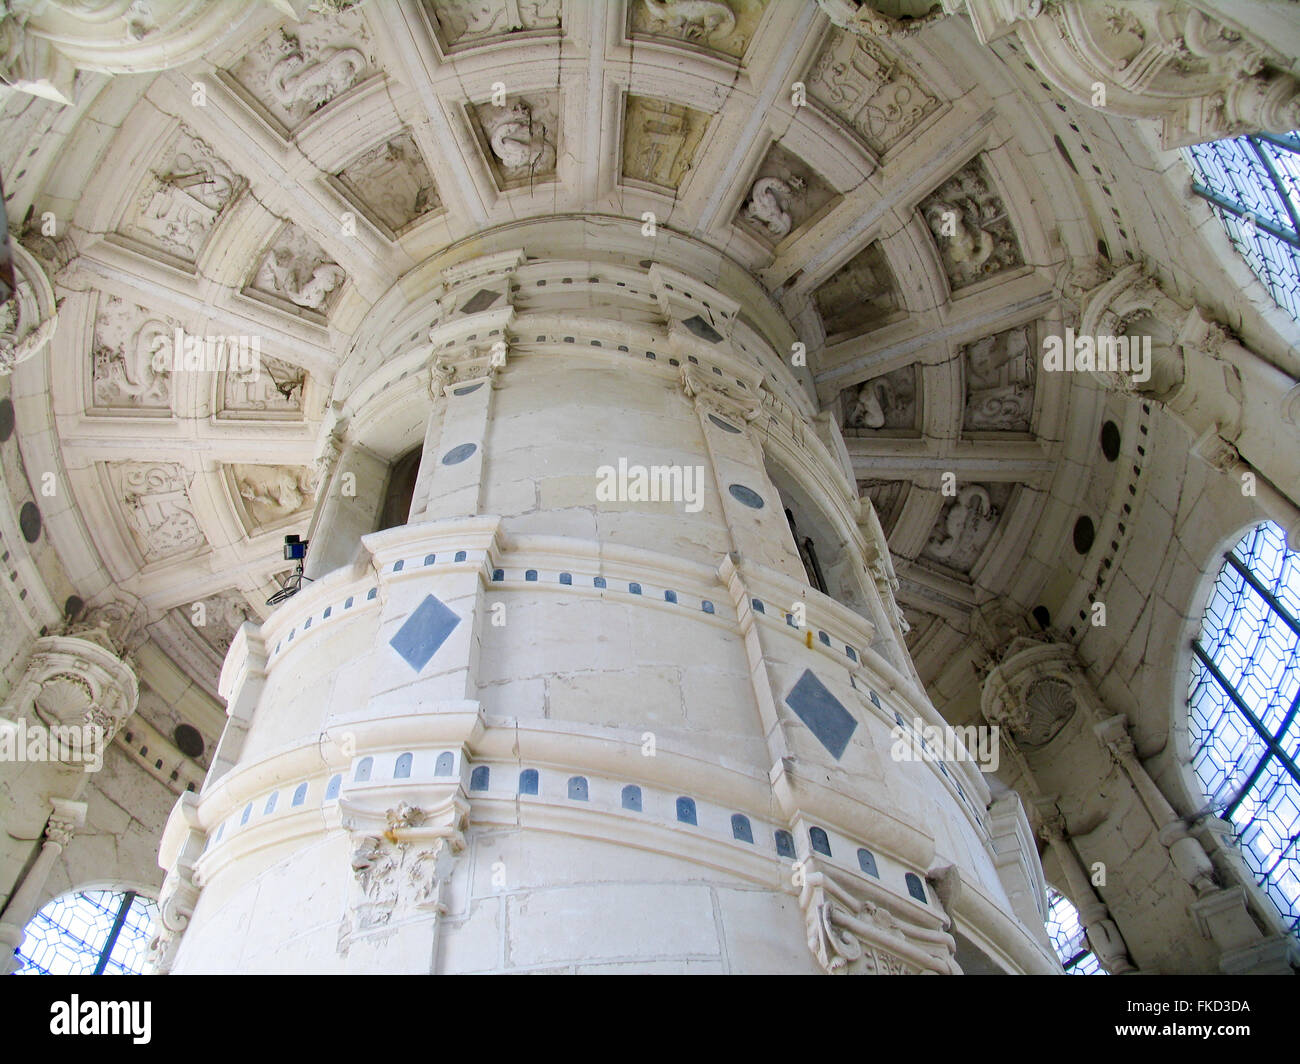 Columna central de mármol de la escalera de doble hélice de la molécula del château de Chambord. Foto de stock